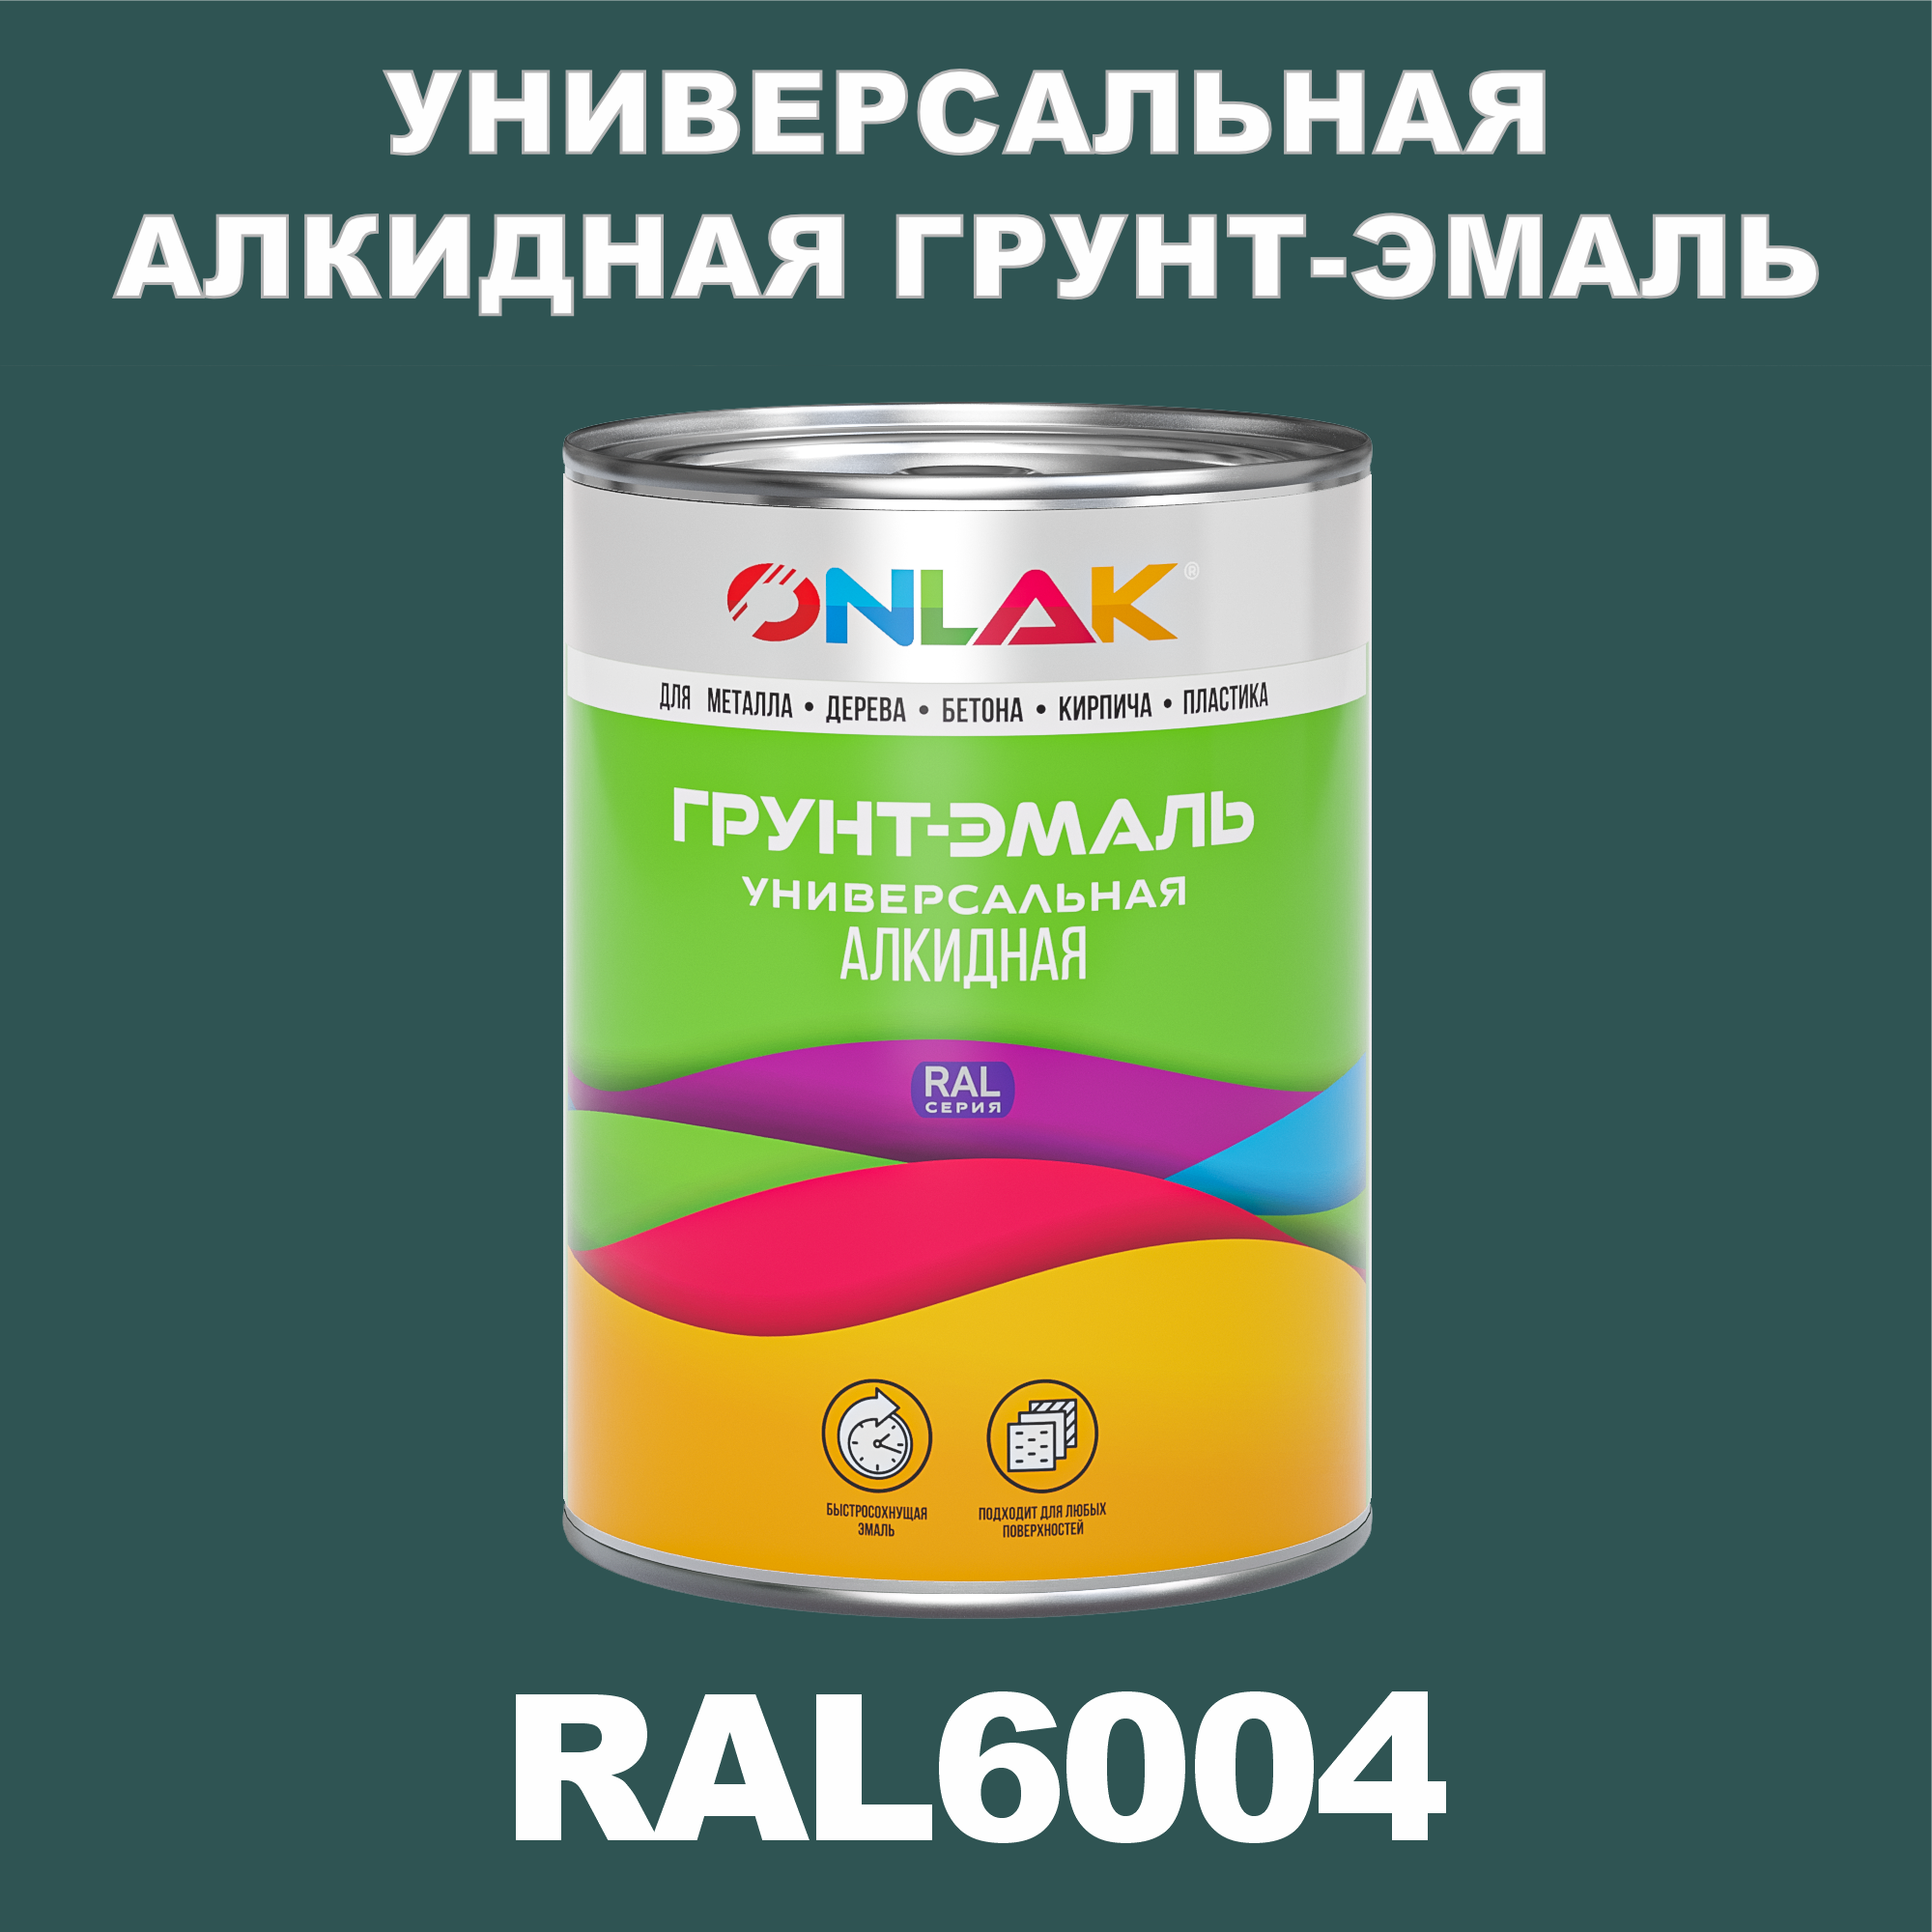 Грунт-эмаль ONLAK 1К RAL6004 антикоррозионная алкидная по металлу по ржавчине 1 кг грунт эмаль skladno по ржавчине алкидная желтая 1 8 кг